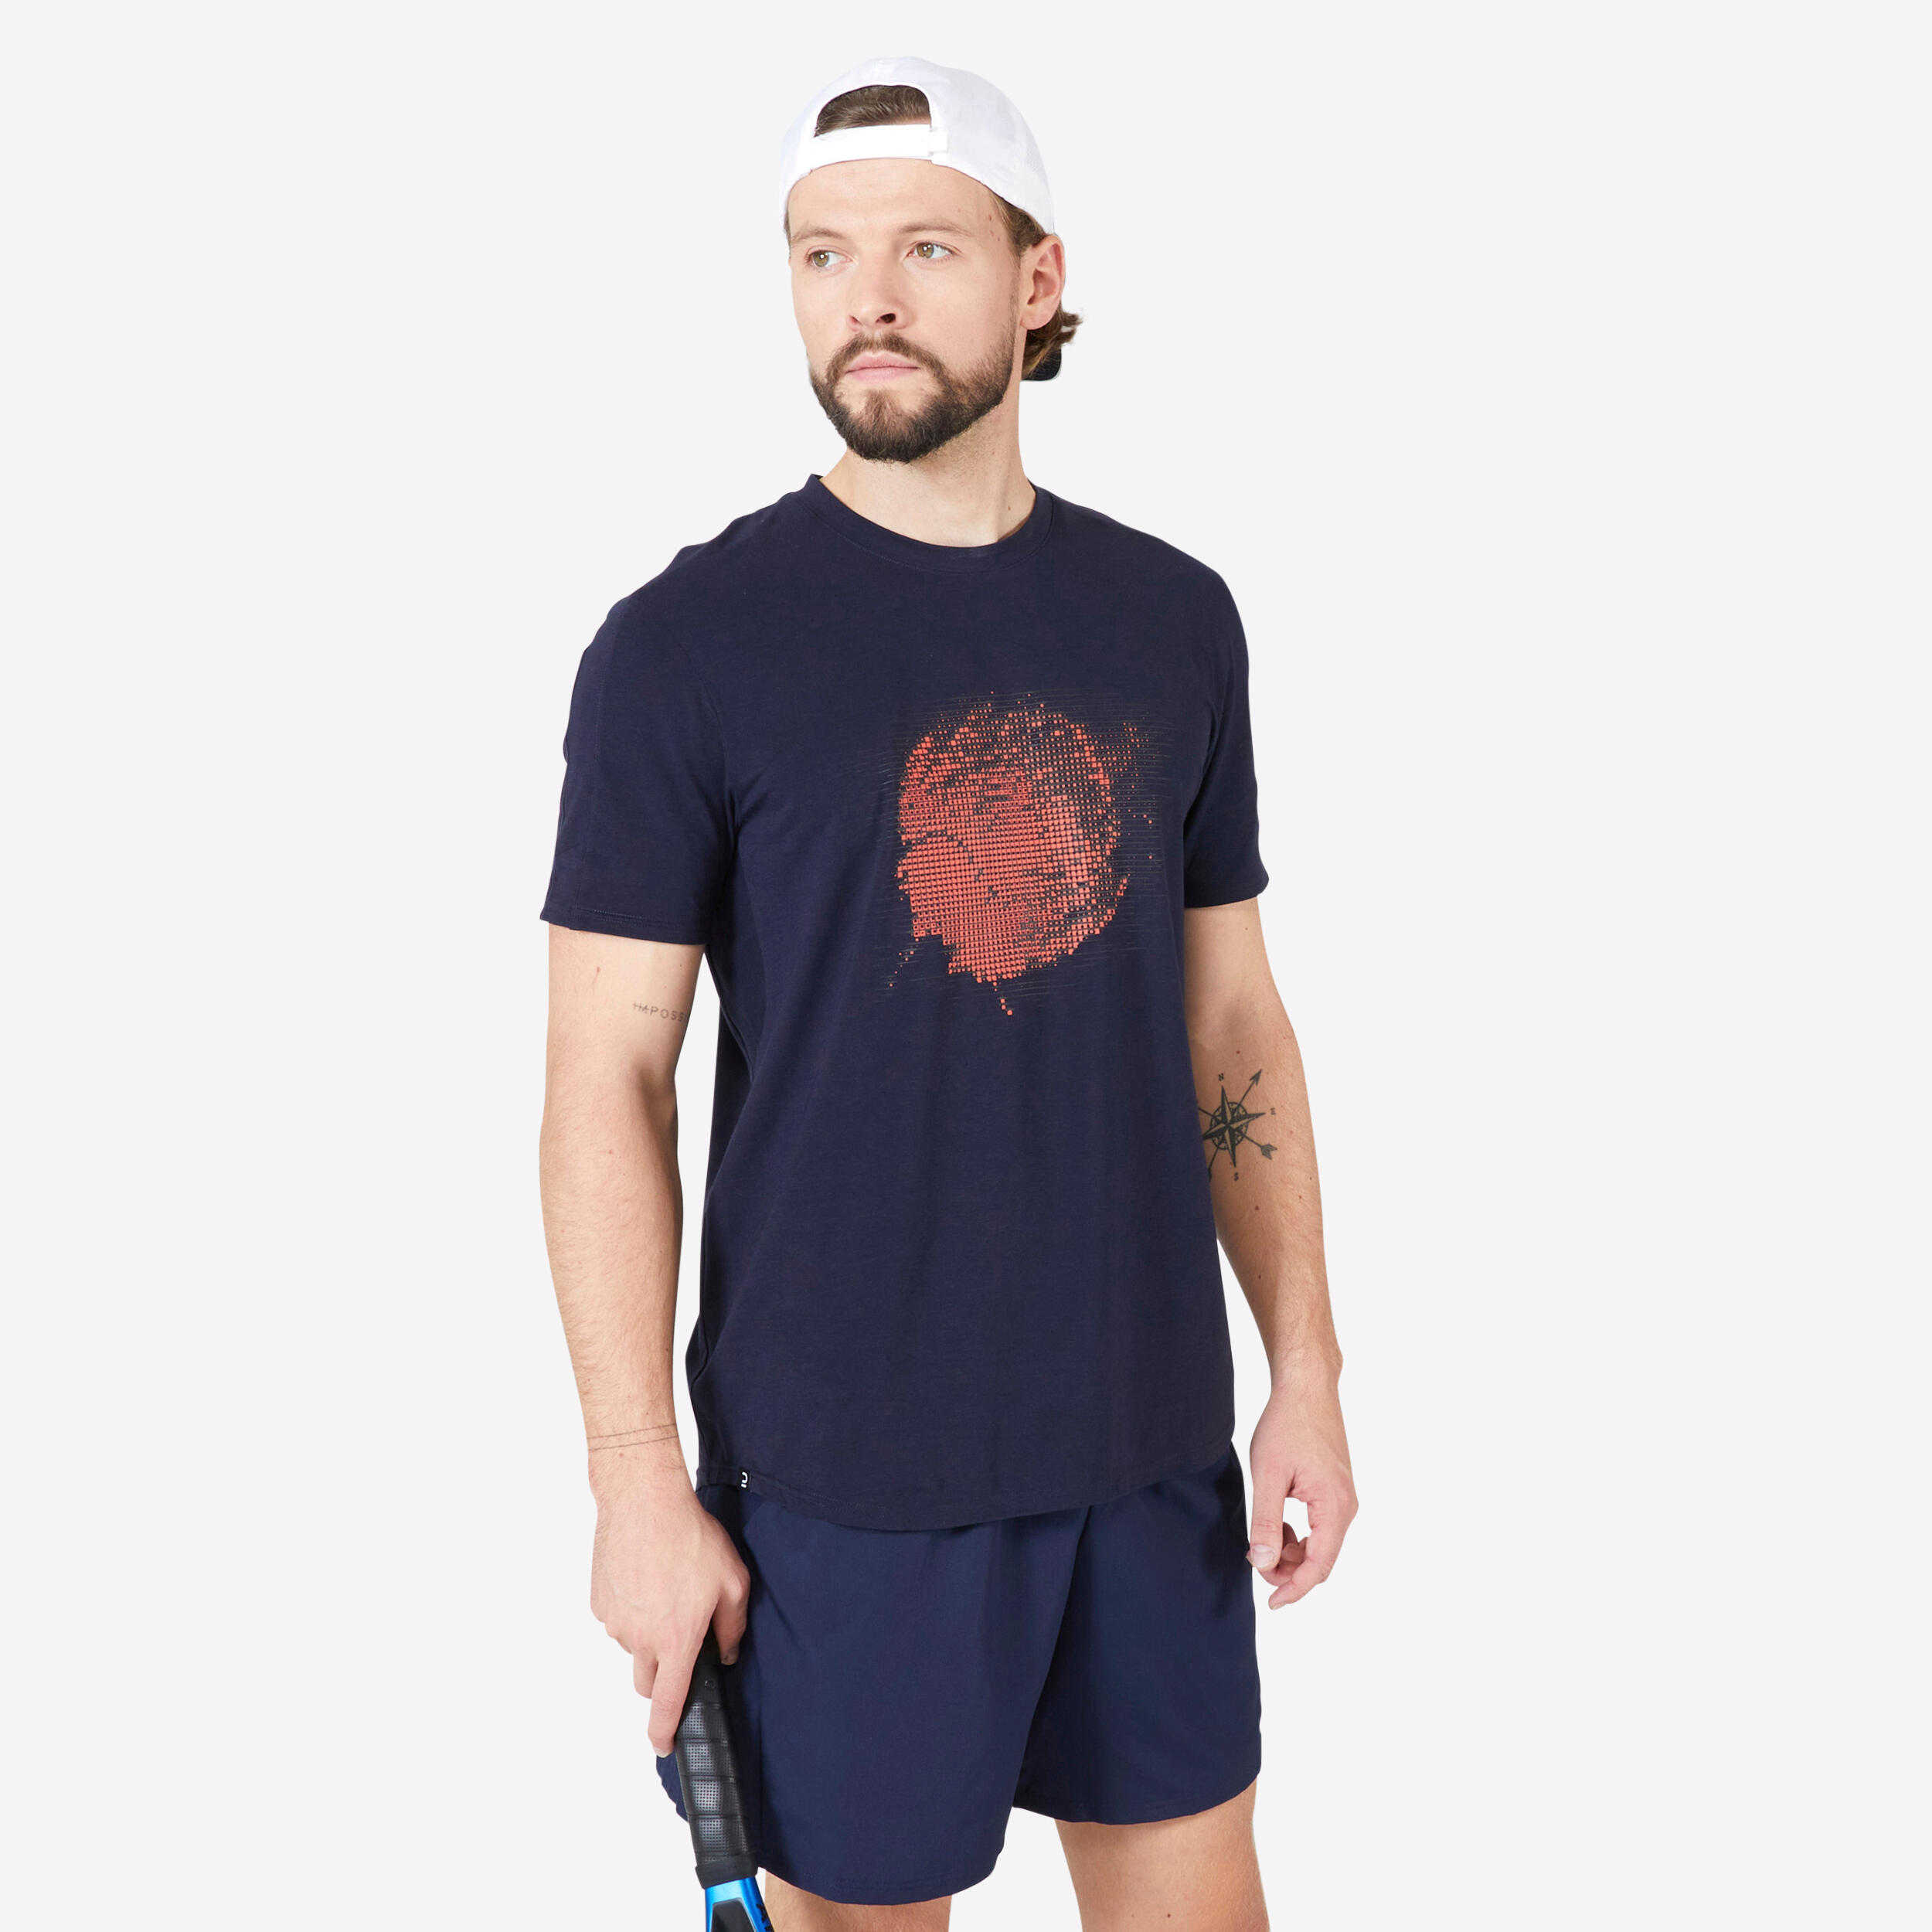 ARTENGO T-Shirt De Tennis Homme - Tts Soft Marine